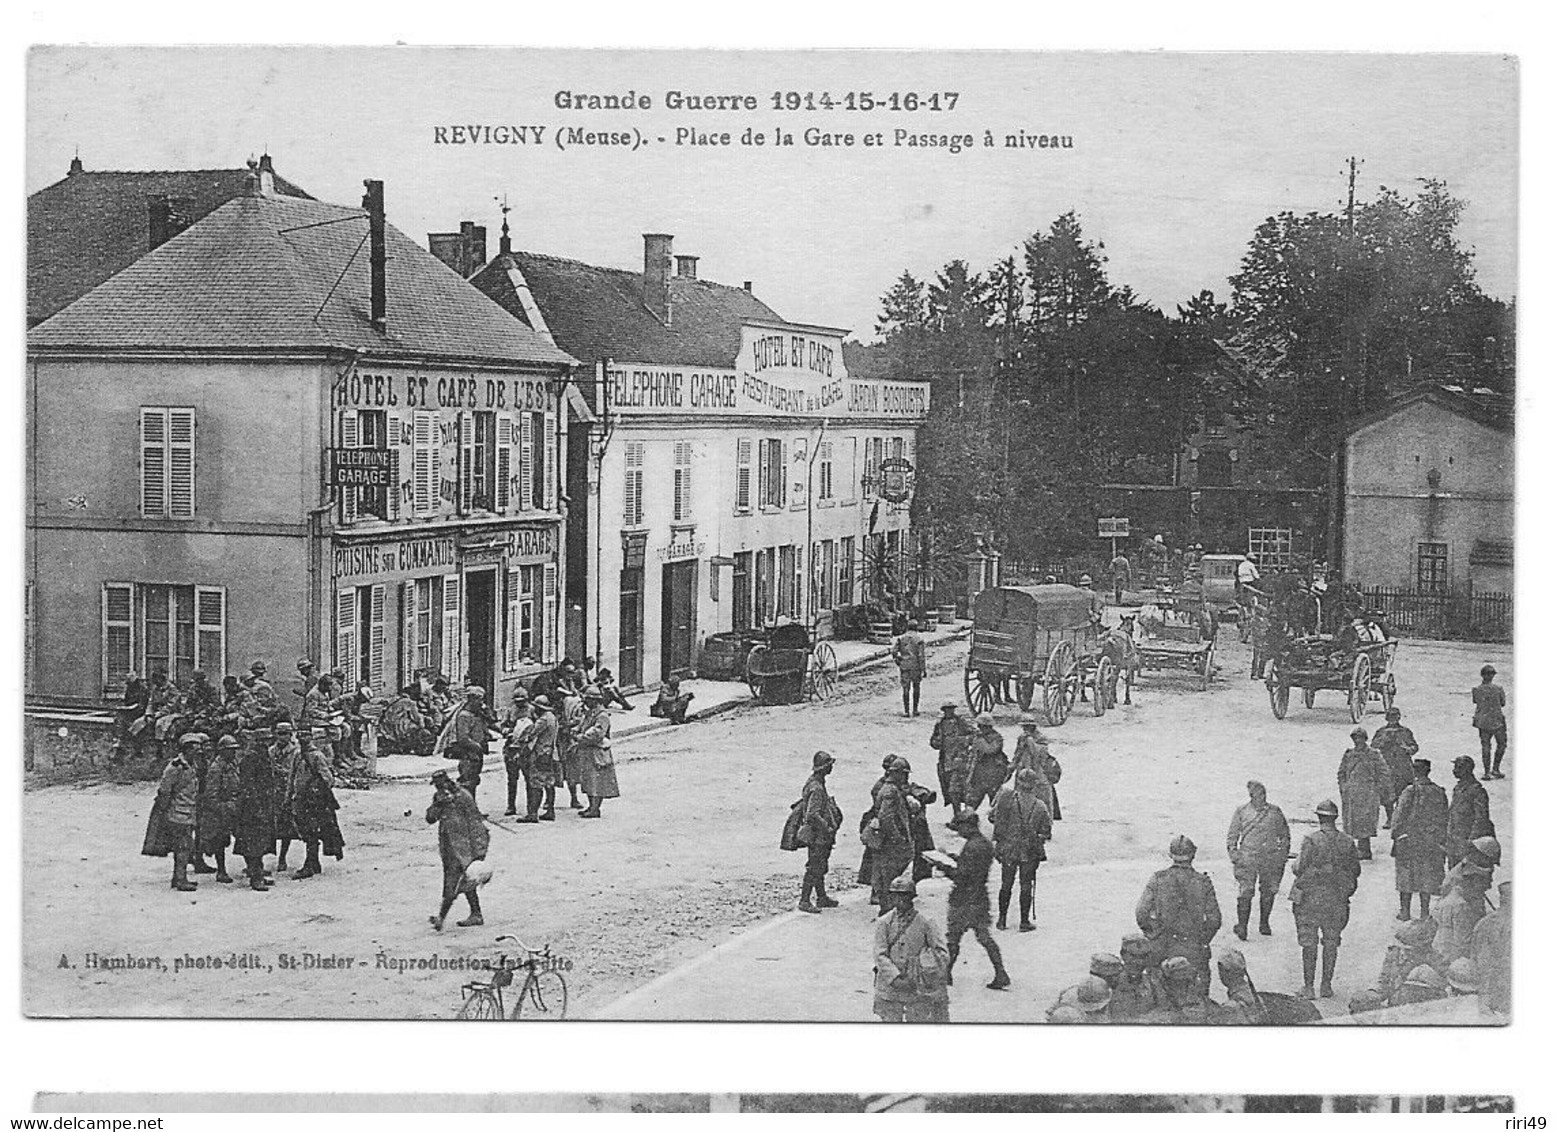 Cpa, Commerce, MEUSE, REVIGNY, Grande Guerre 1914, Place De La Gare Et Passage à Niveau, Charrette, Café, Restaurant, - Cafes